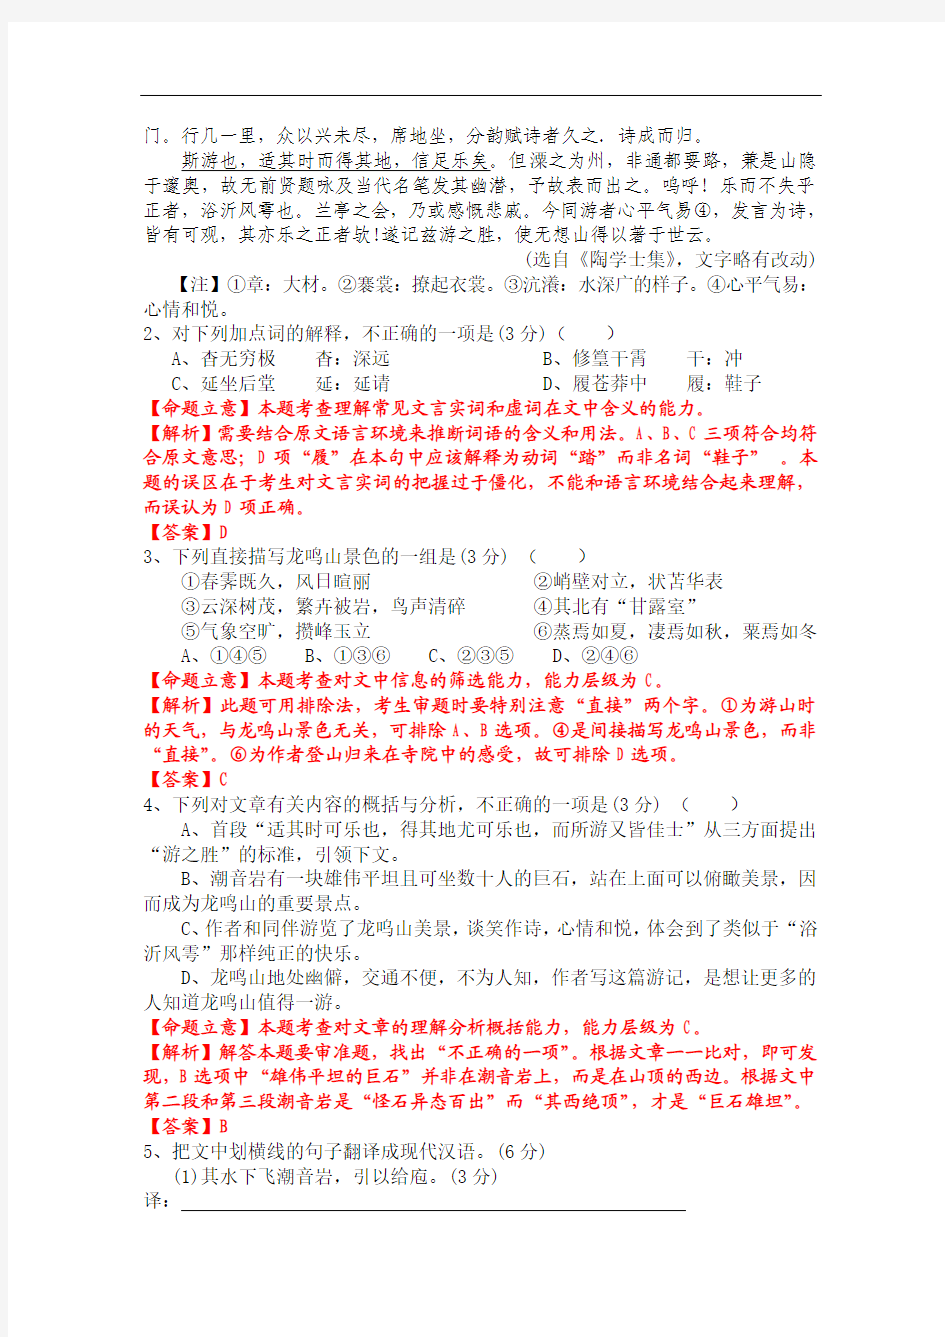 2012年高考真题——语文(福建卷)解析版